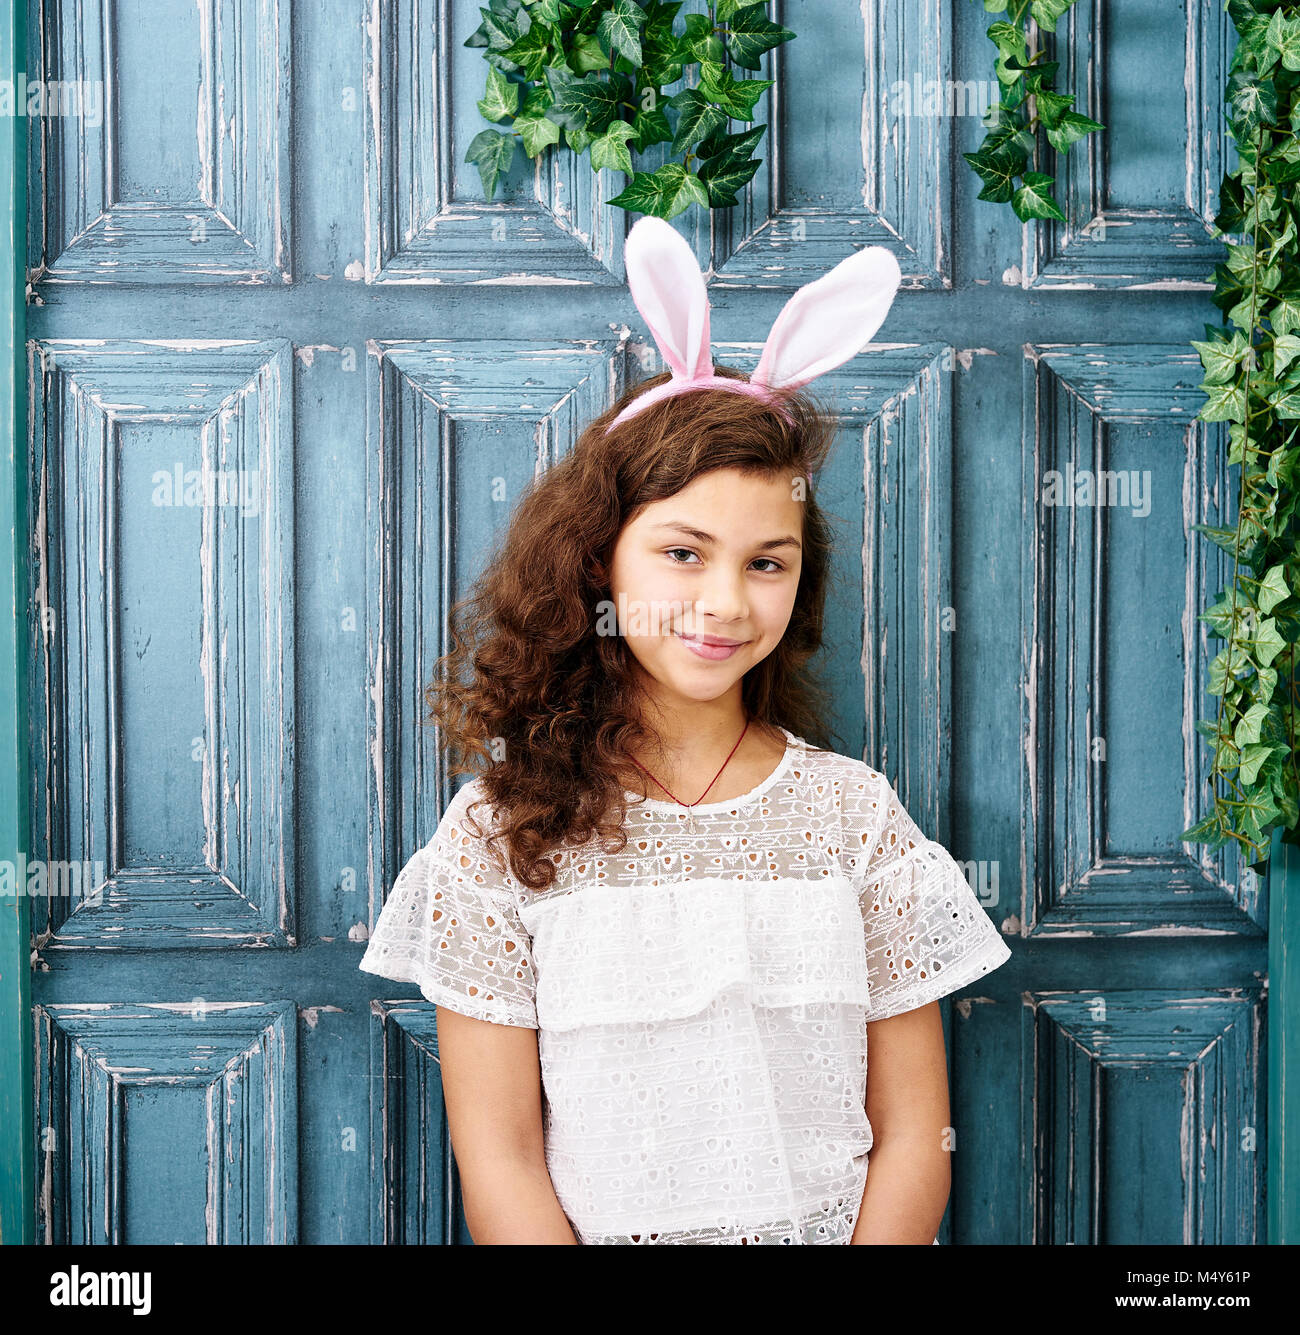 Ten years girl with bunny ears Stock Photo